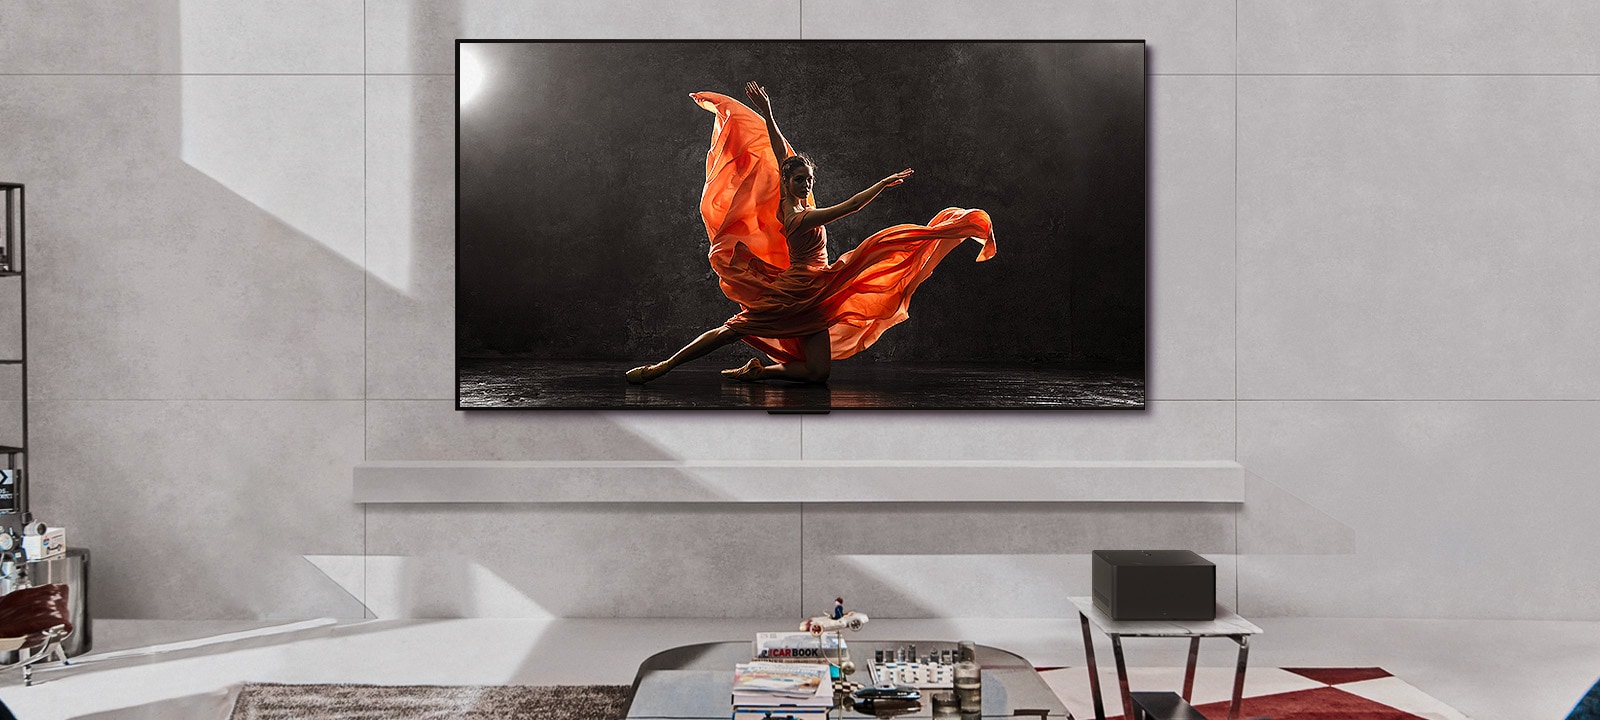 LG SIGNATURE OLED M4 e LG Soundbar numa sala de estar moderna durante o dia. A imagem no ecrã de um bailarino num palco escuro é apresentada com os níveis de brilho ideais.